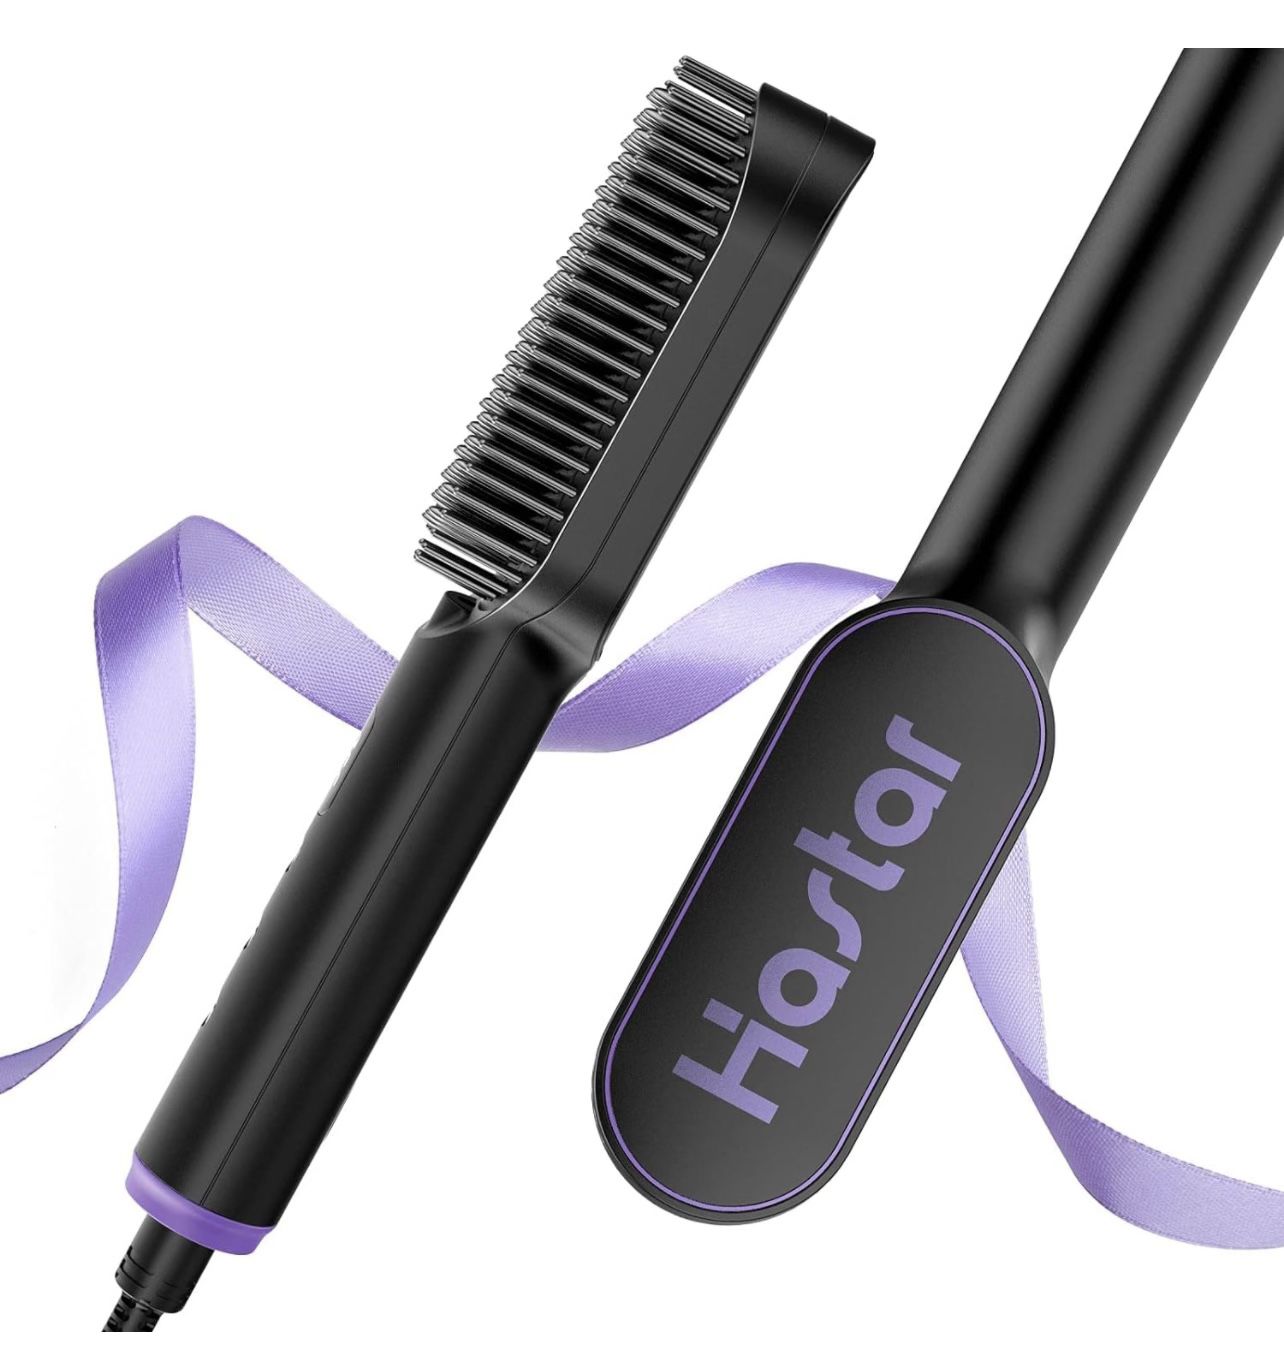 BRAND NEW IN BOX Hair Straightener Brush, Hastar Ceramic Negative Ion Straightening Comb, 20s Fast Heating Electric Hot Hair Brush,